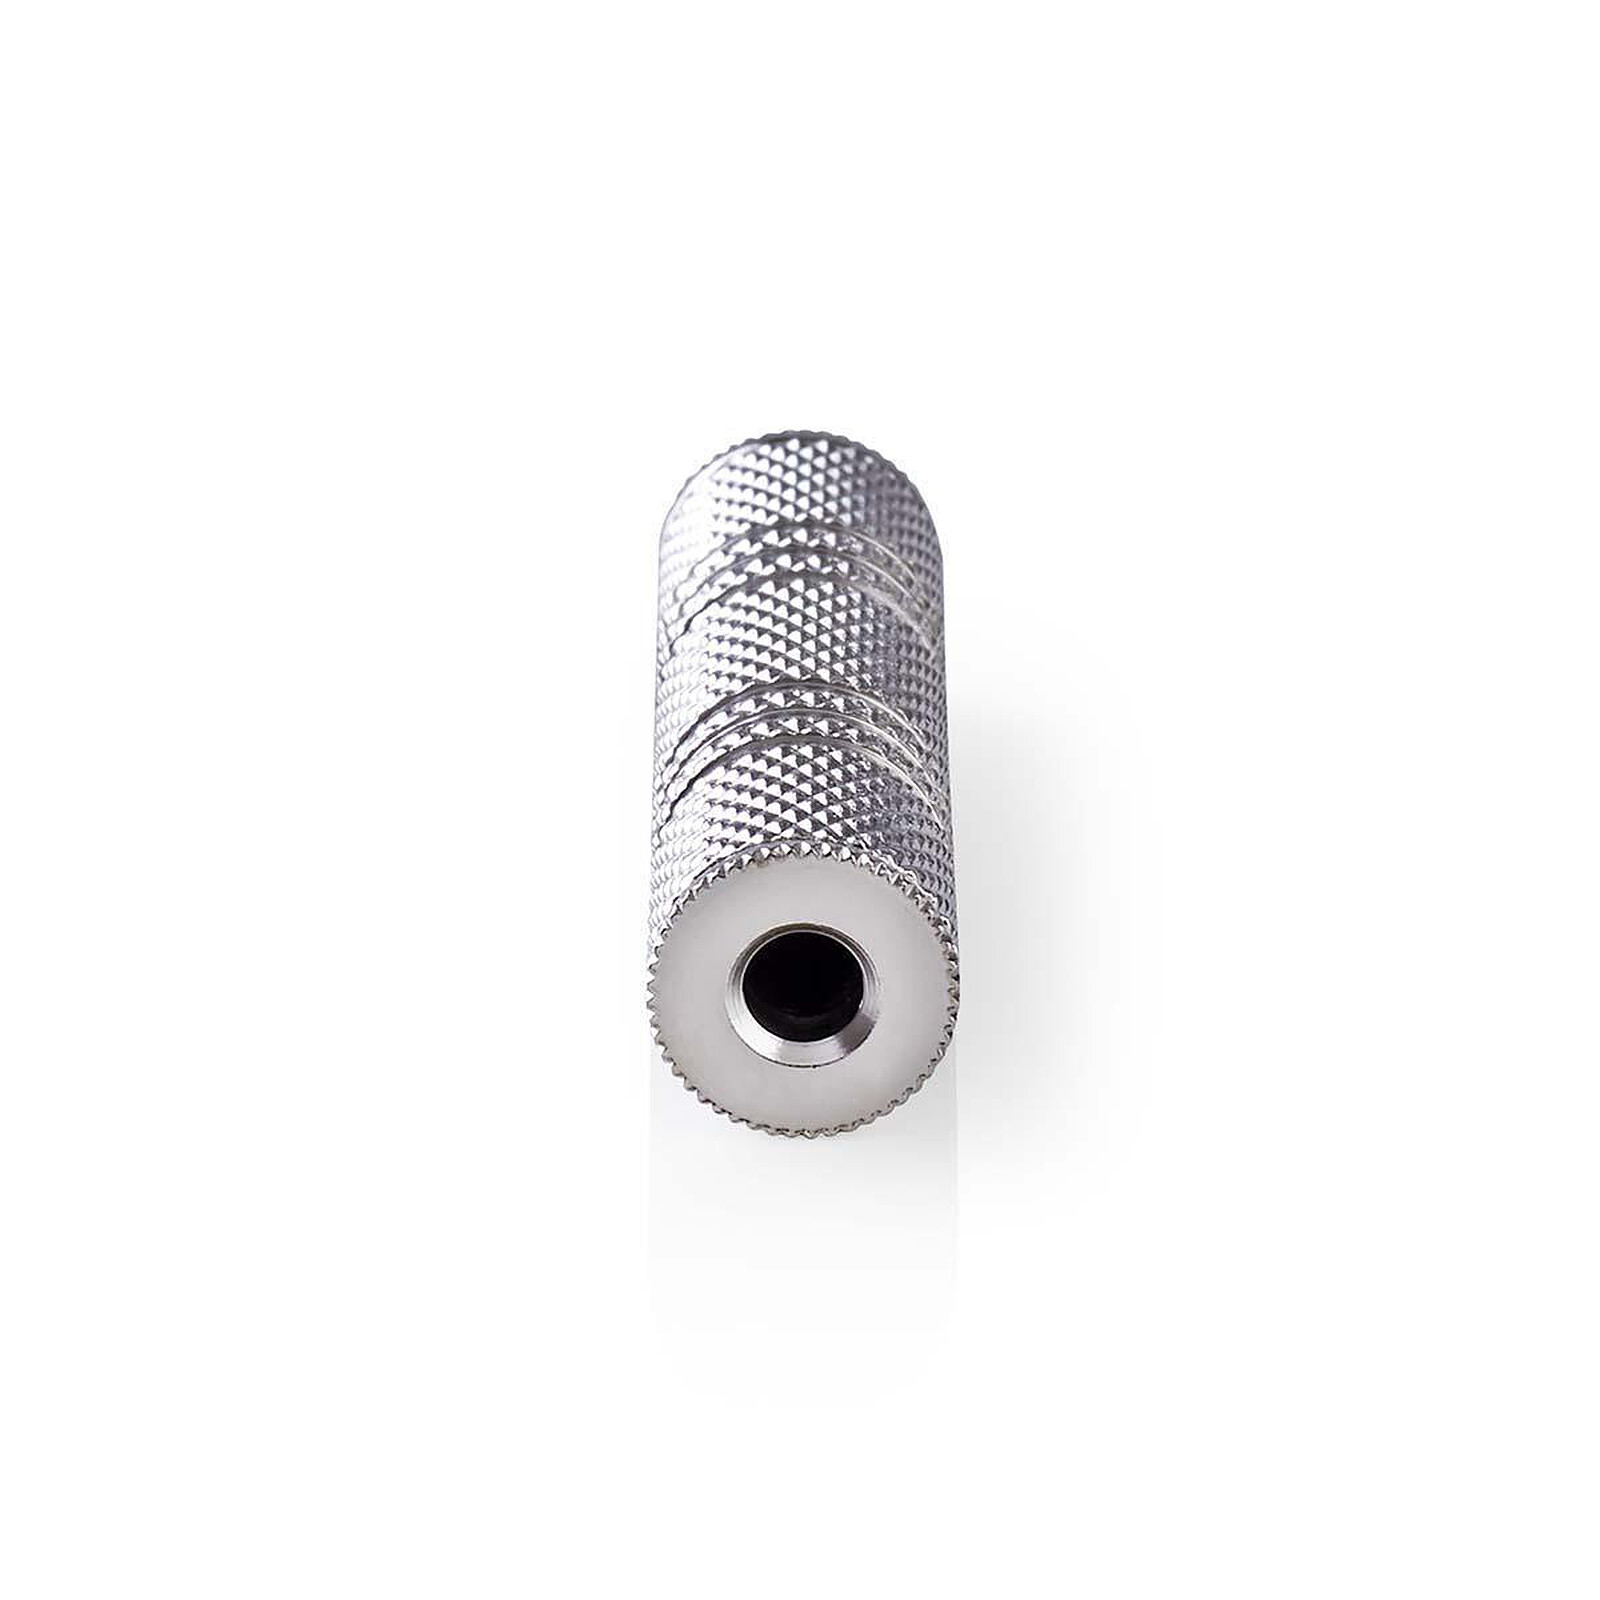 Dédoubleur Jack 3.5 mm stéréo (0.15 m) - Adaptateur audio - Garantie 3 ans  LDLC